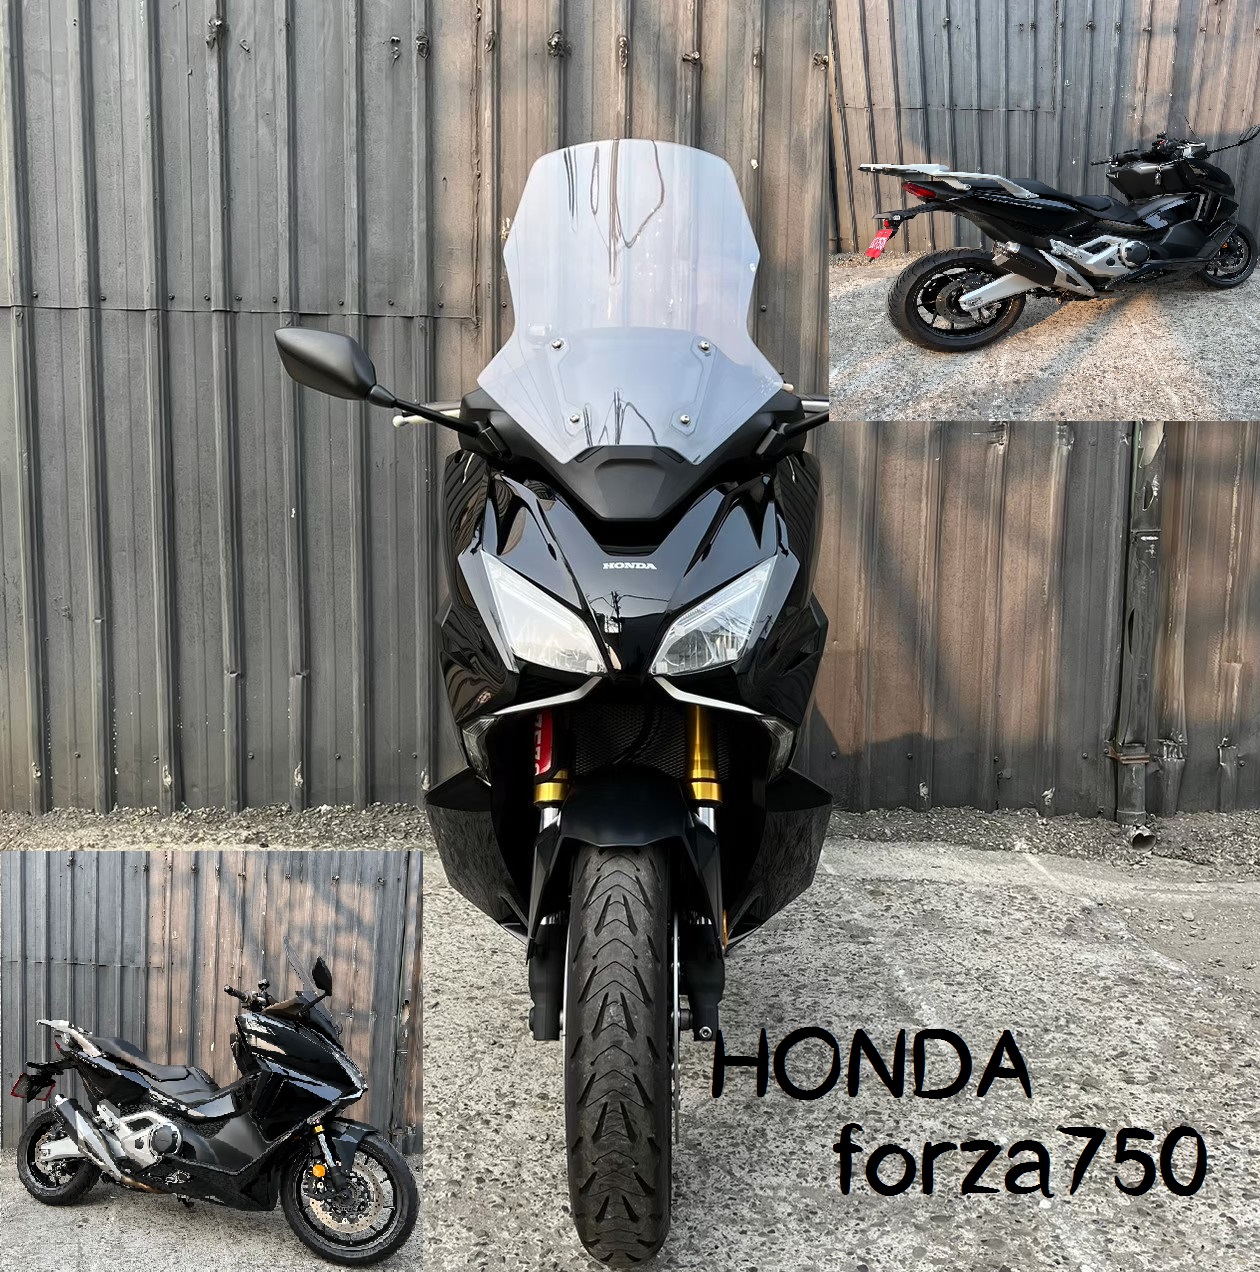 【飛翔國際】HONDA FORZA - 「Webike-摩托車市」 2021 Honda Forza 750 ABS DCT HSTC 低里程 可車換車 可全額貸 FORZA750 大羊 大速可達